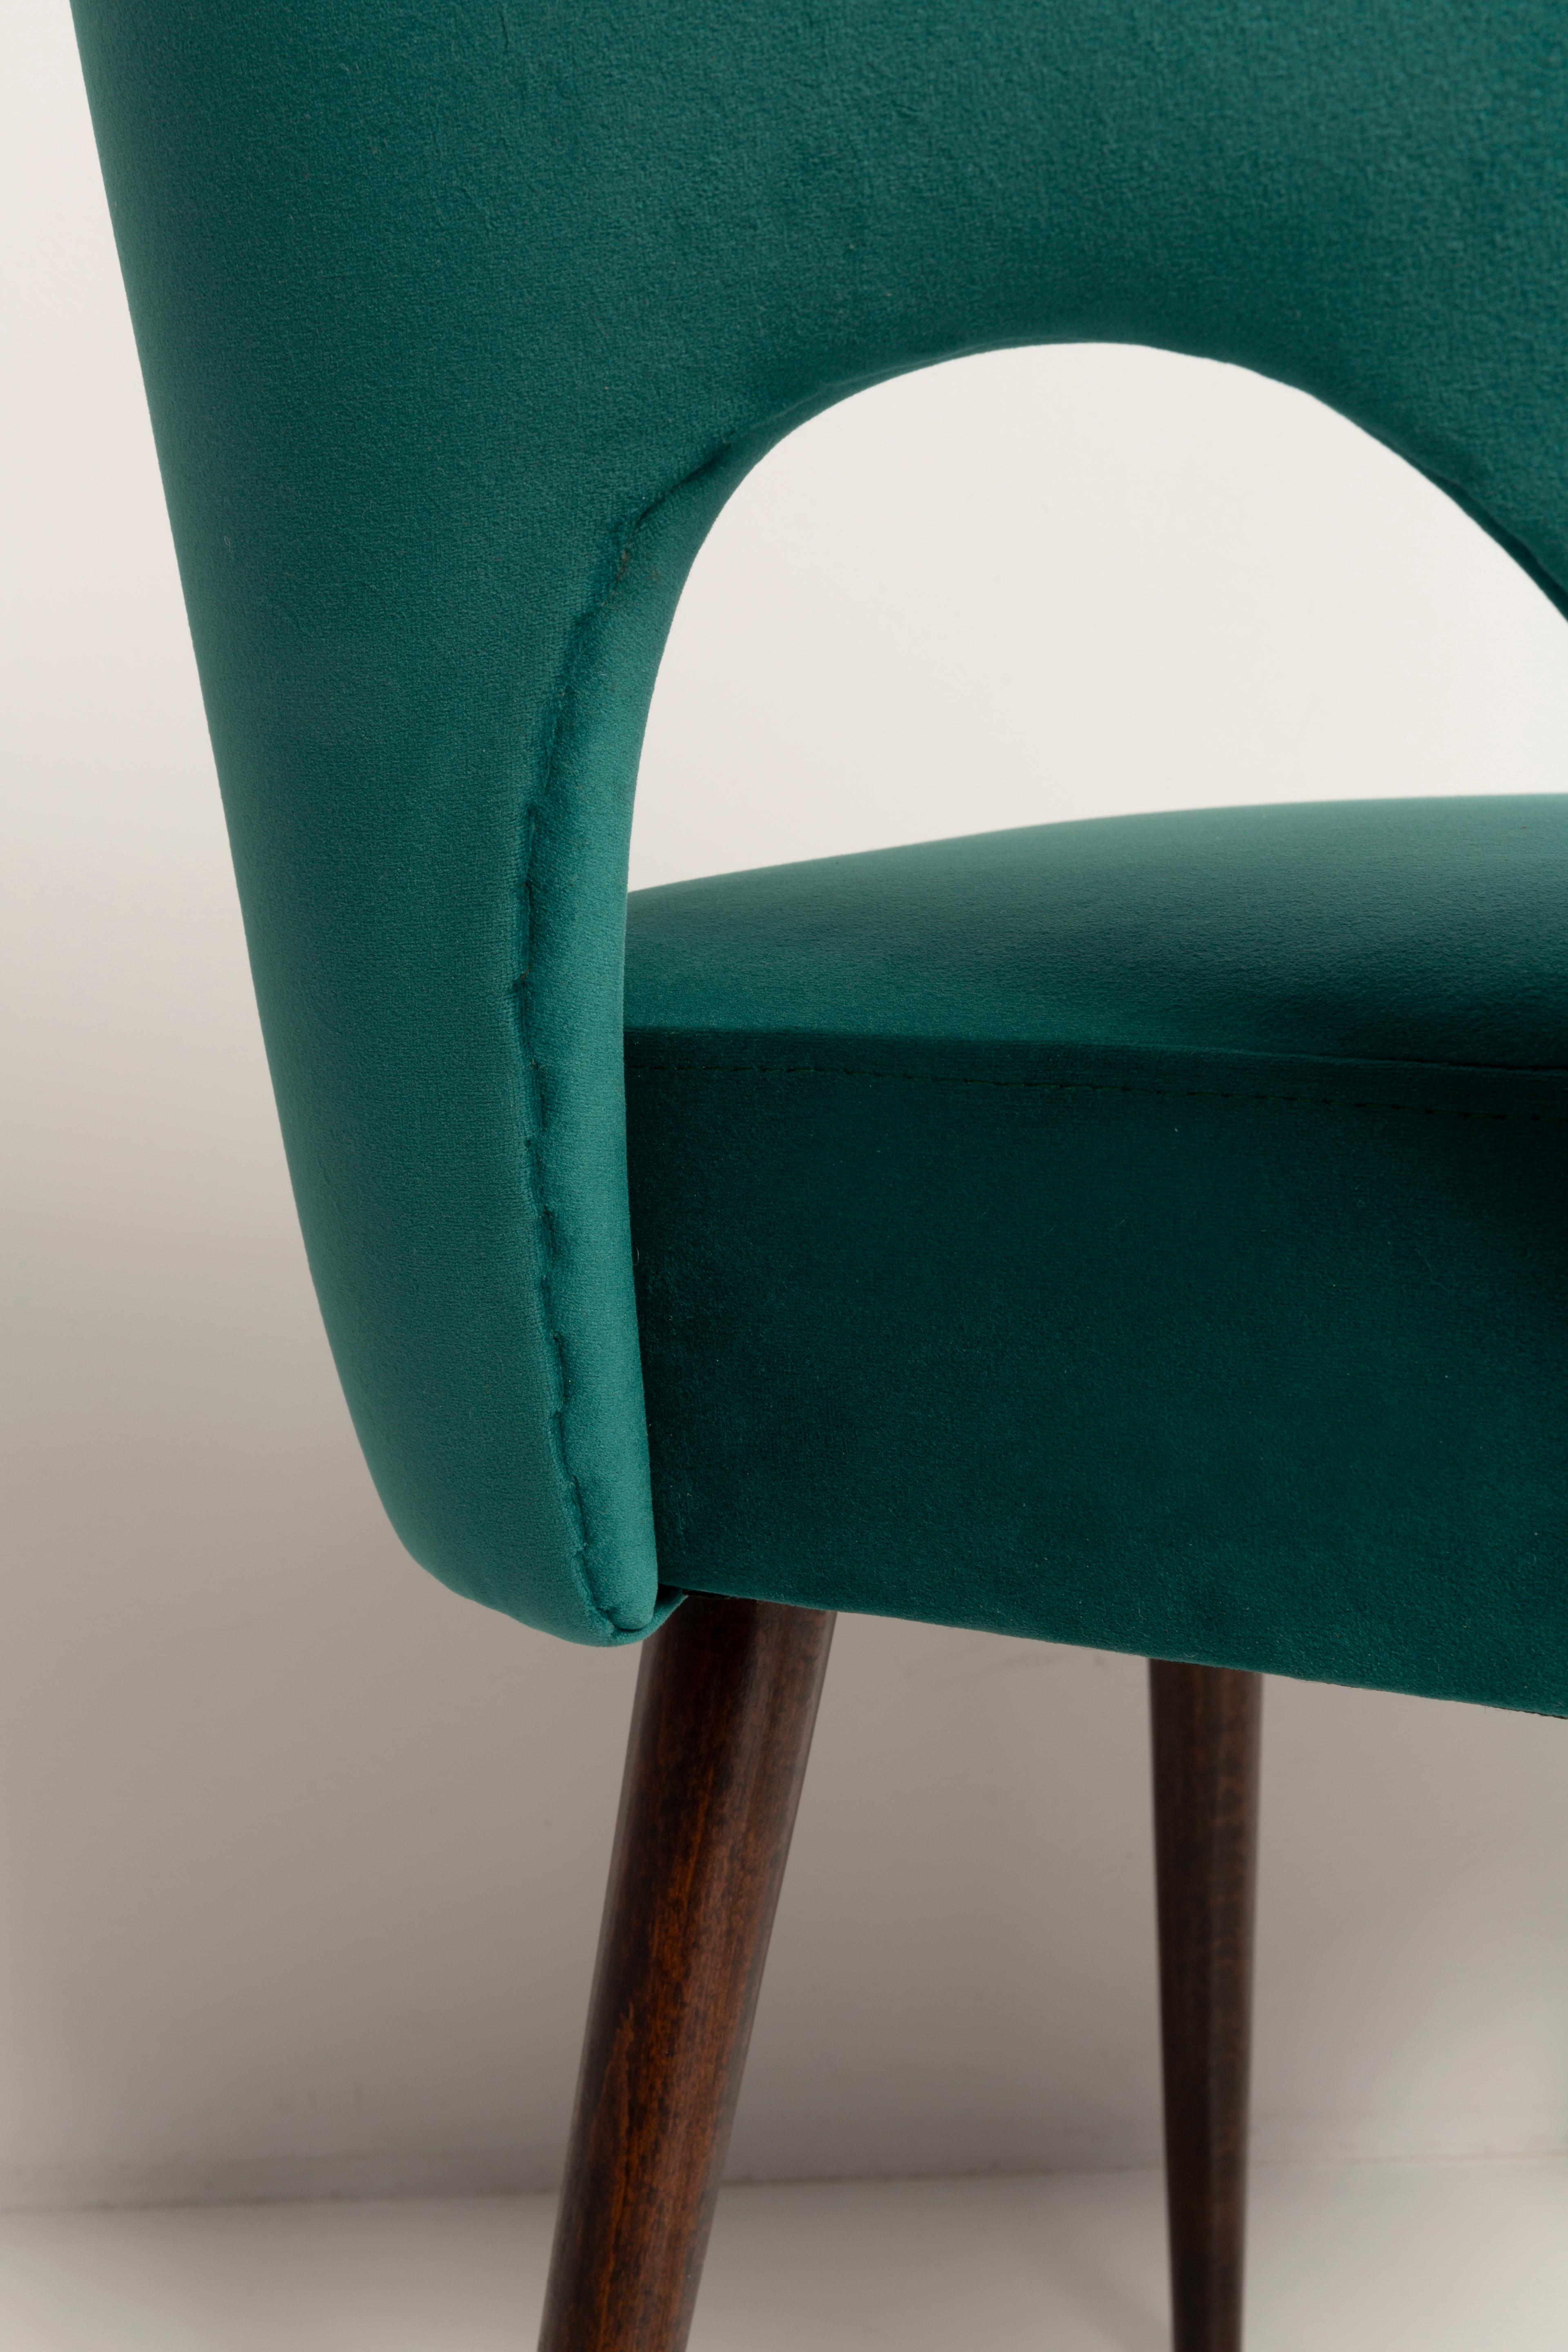 Dark Green Velvet 'Shell' Chair, Europe, 1960s For Sale 5